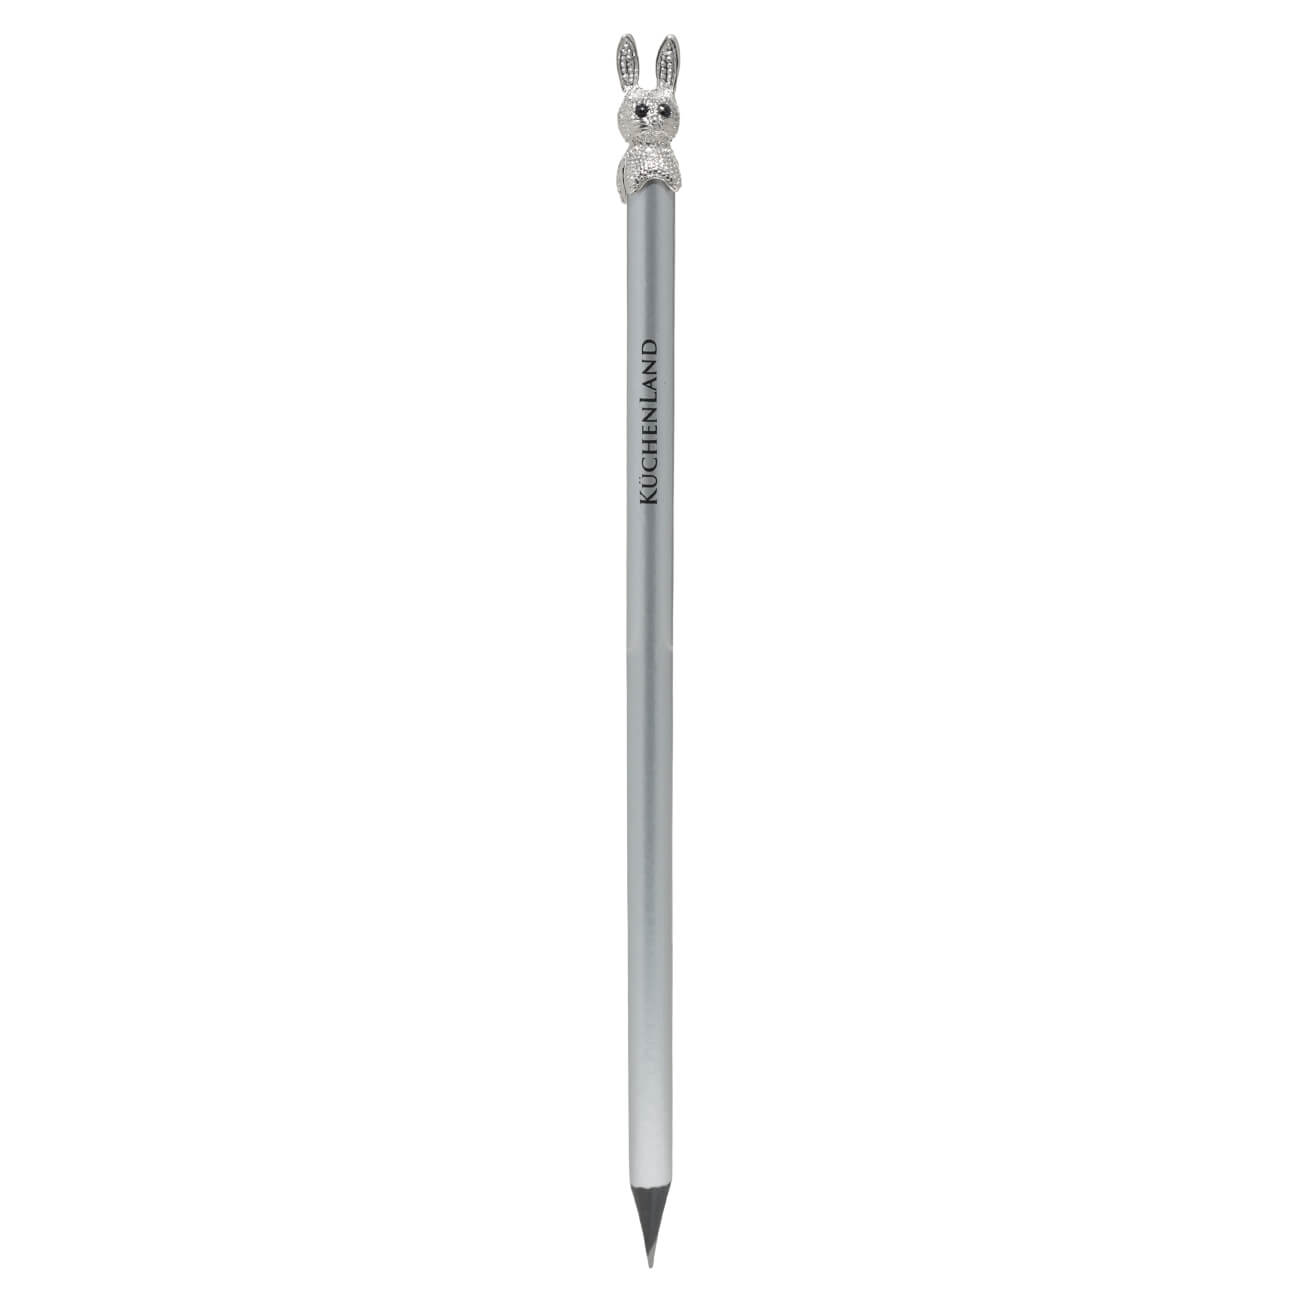 Ручка шариковая, 14 см, с фигуркой, серебристая, Заяц, Draw figure